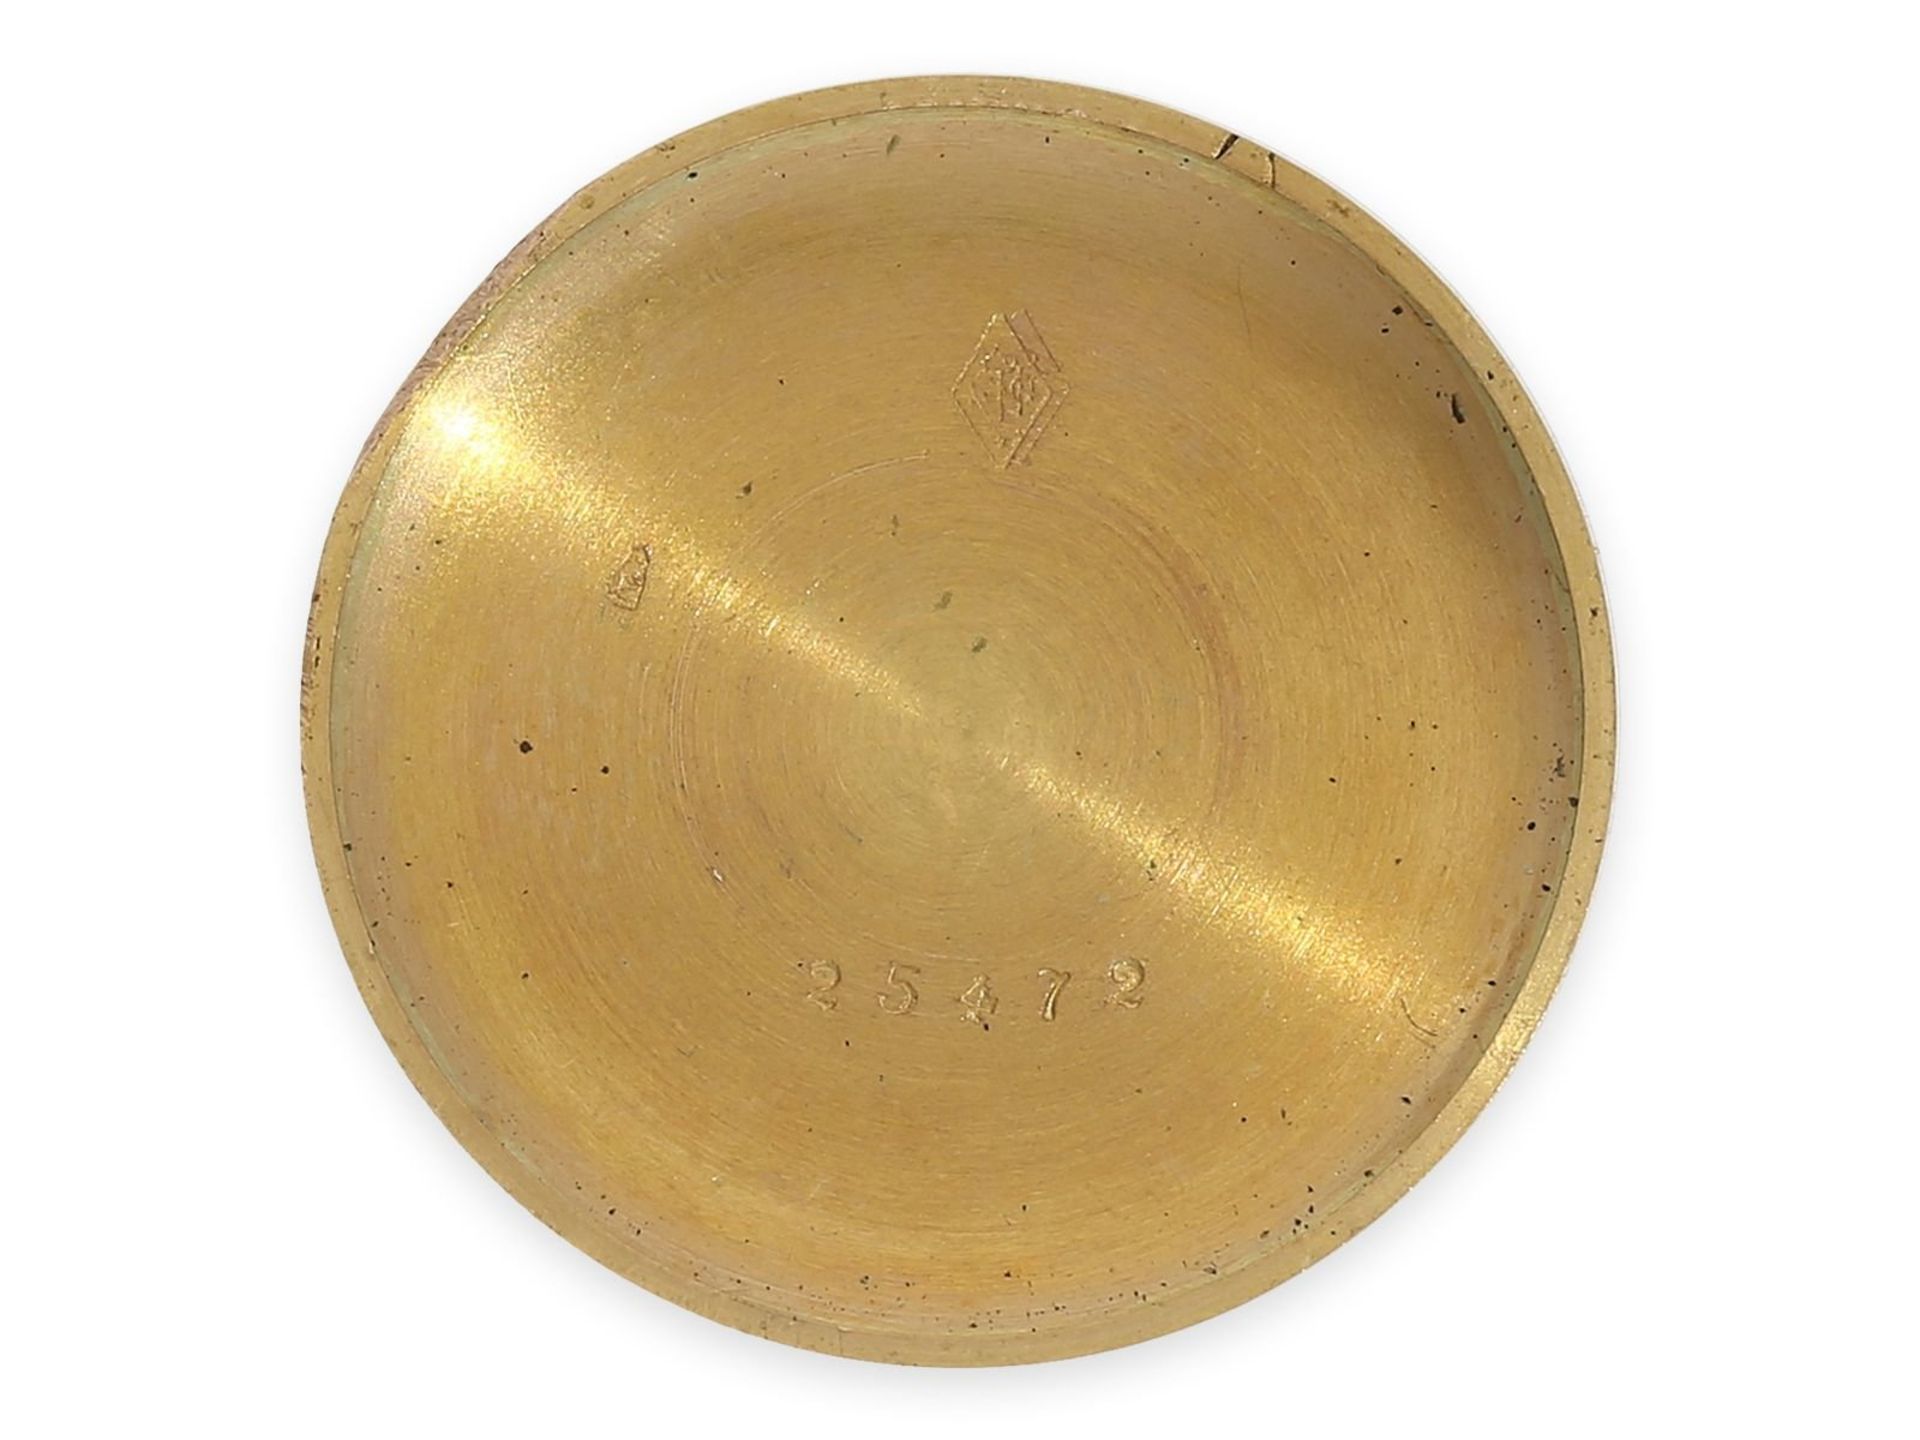 Knopfloch-Uhr: extrem rare Knopflochuhr in 18K Gold mit Diamant- und Rubinbesatz, punziert "bté s.g. - Bild 5 aus 5